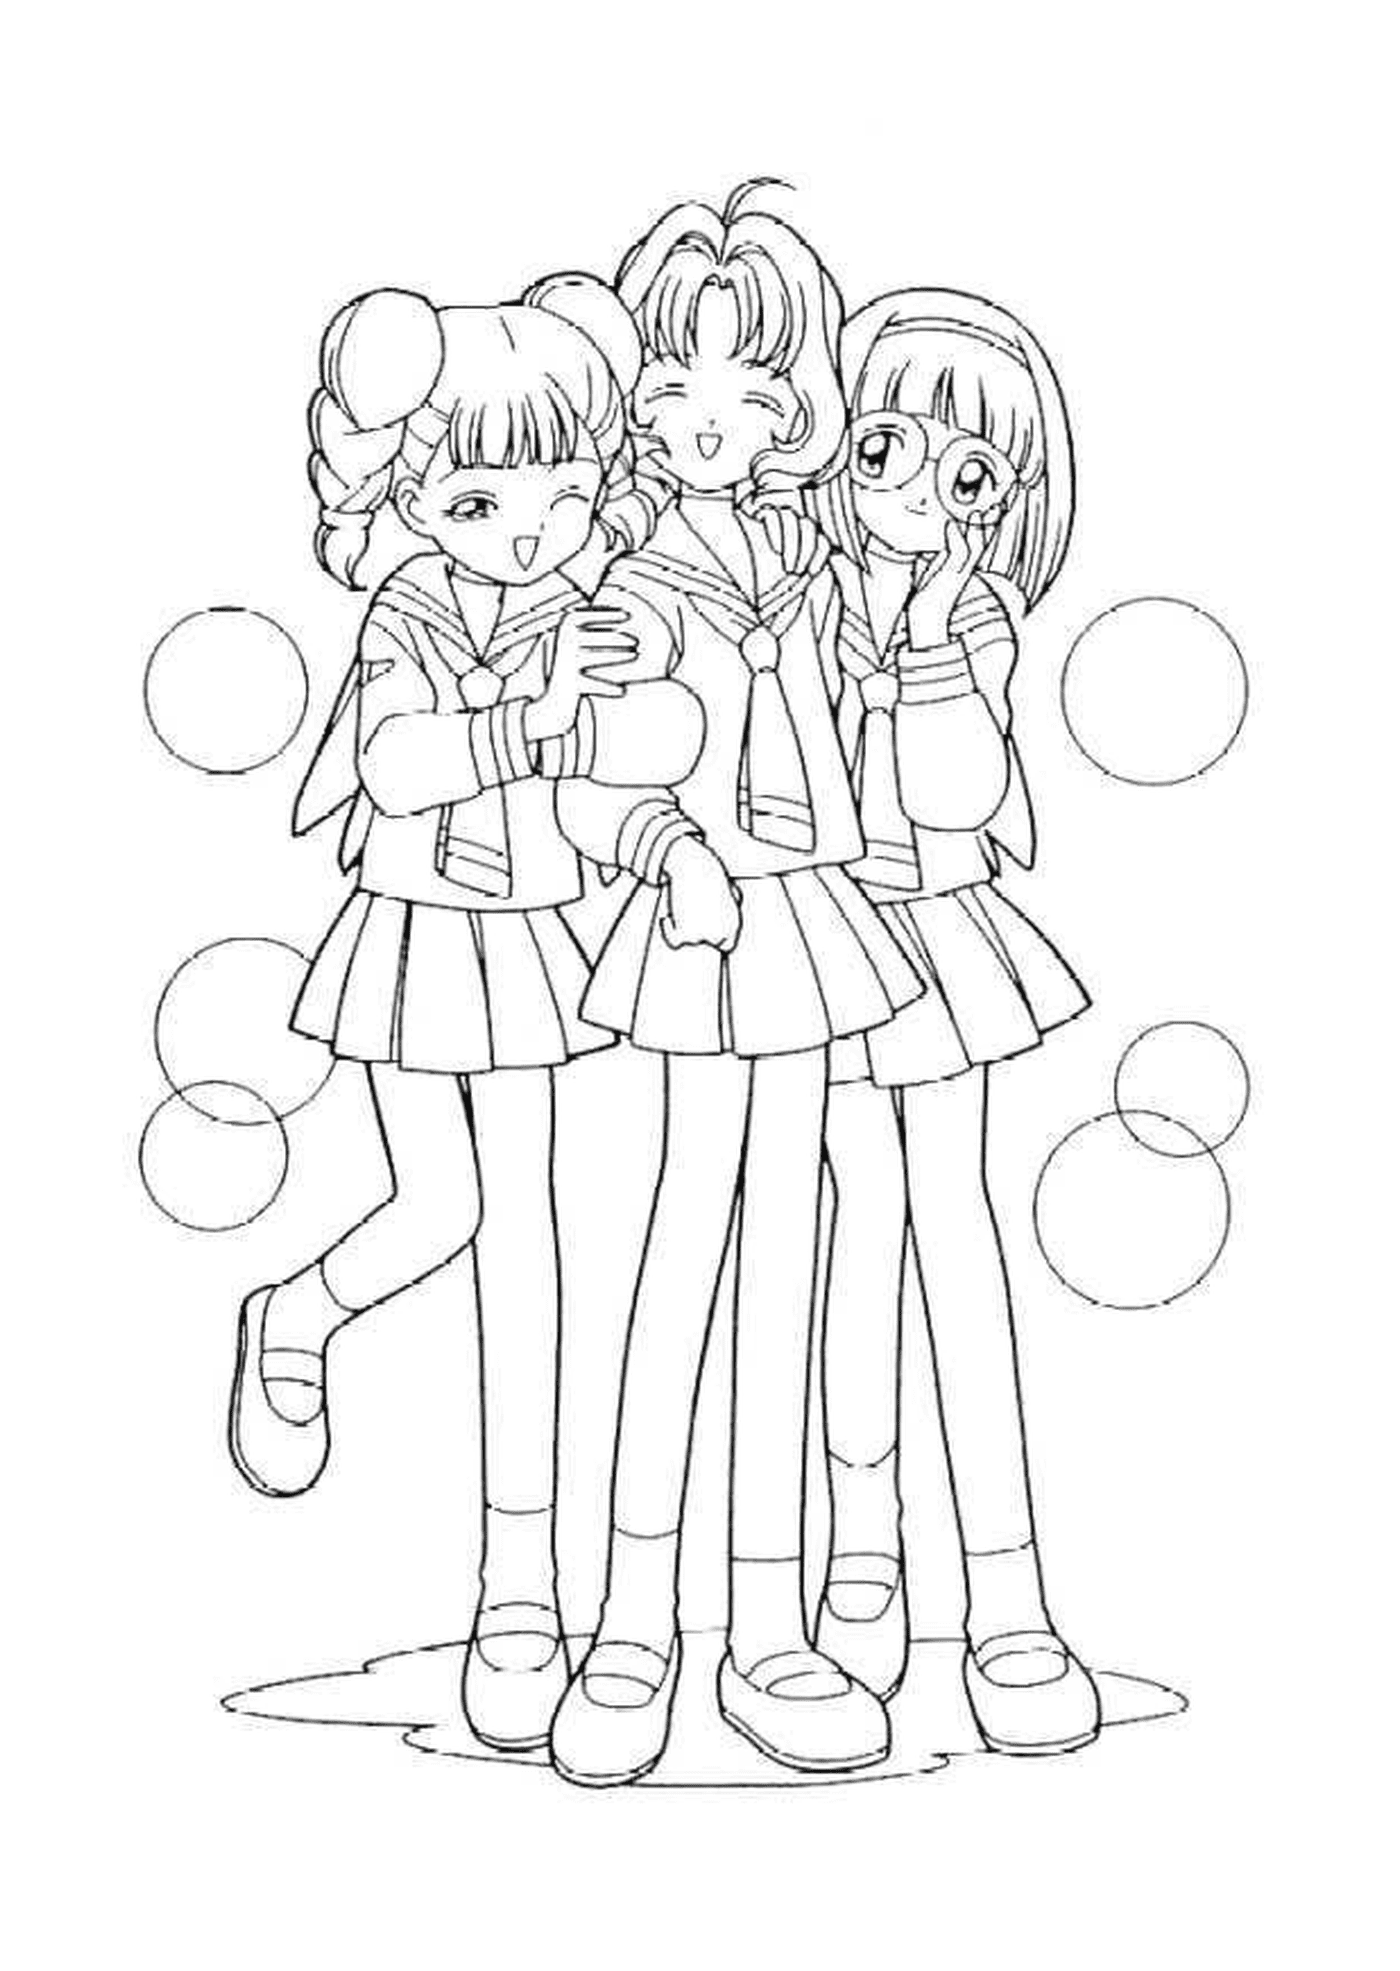  Eine Gruppe von drei Mädchen, die nebeneinander stehen 